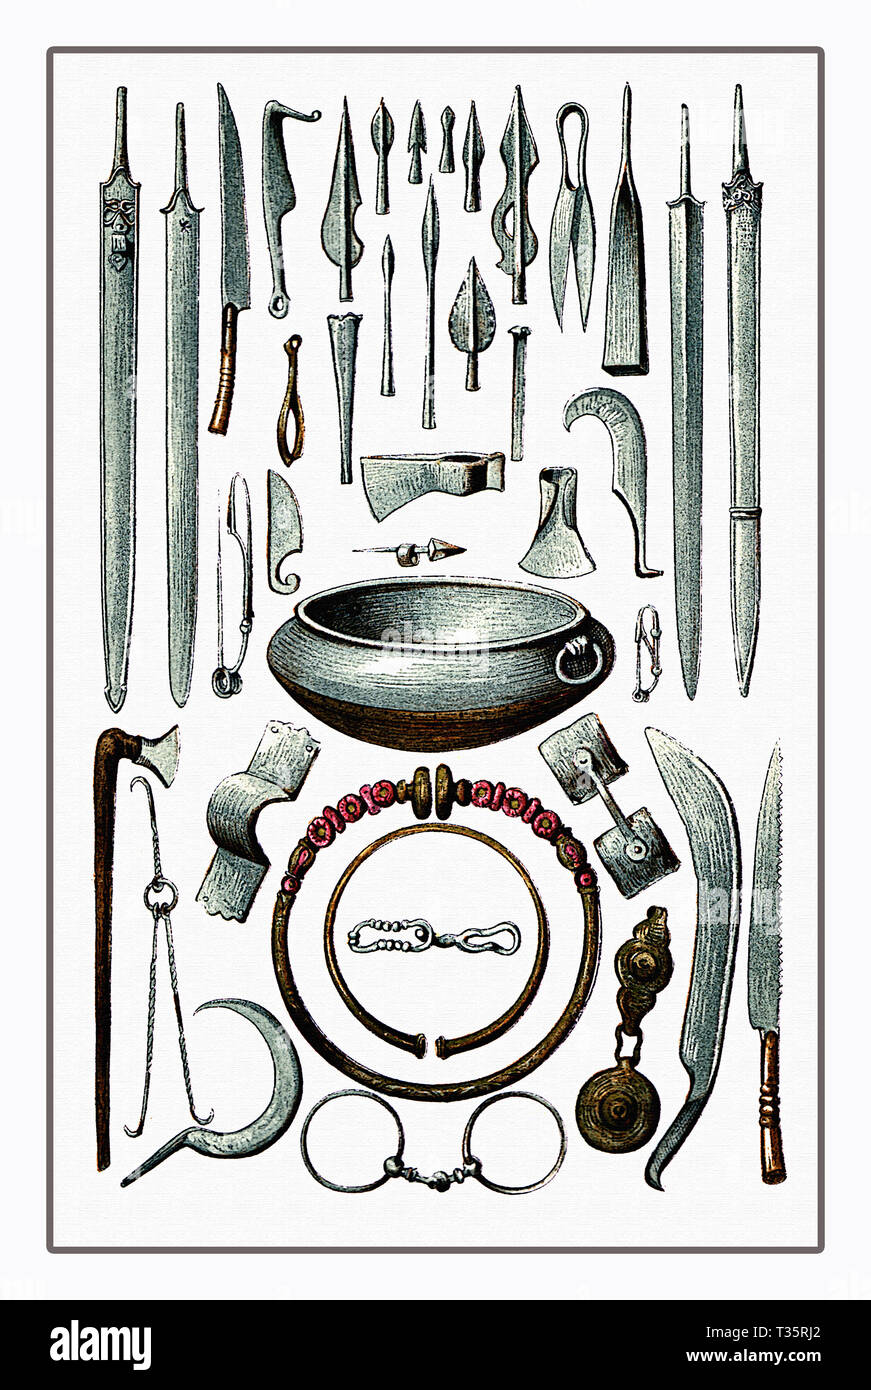 Las armas, las herramientas y los ornamentos de la unión de la edad de hierro desde el sitio arqueológico de La Tene en Suiza, cerca del lago de Neuchâtel, ca. 500 A.C. Foto de stock